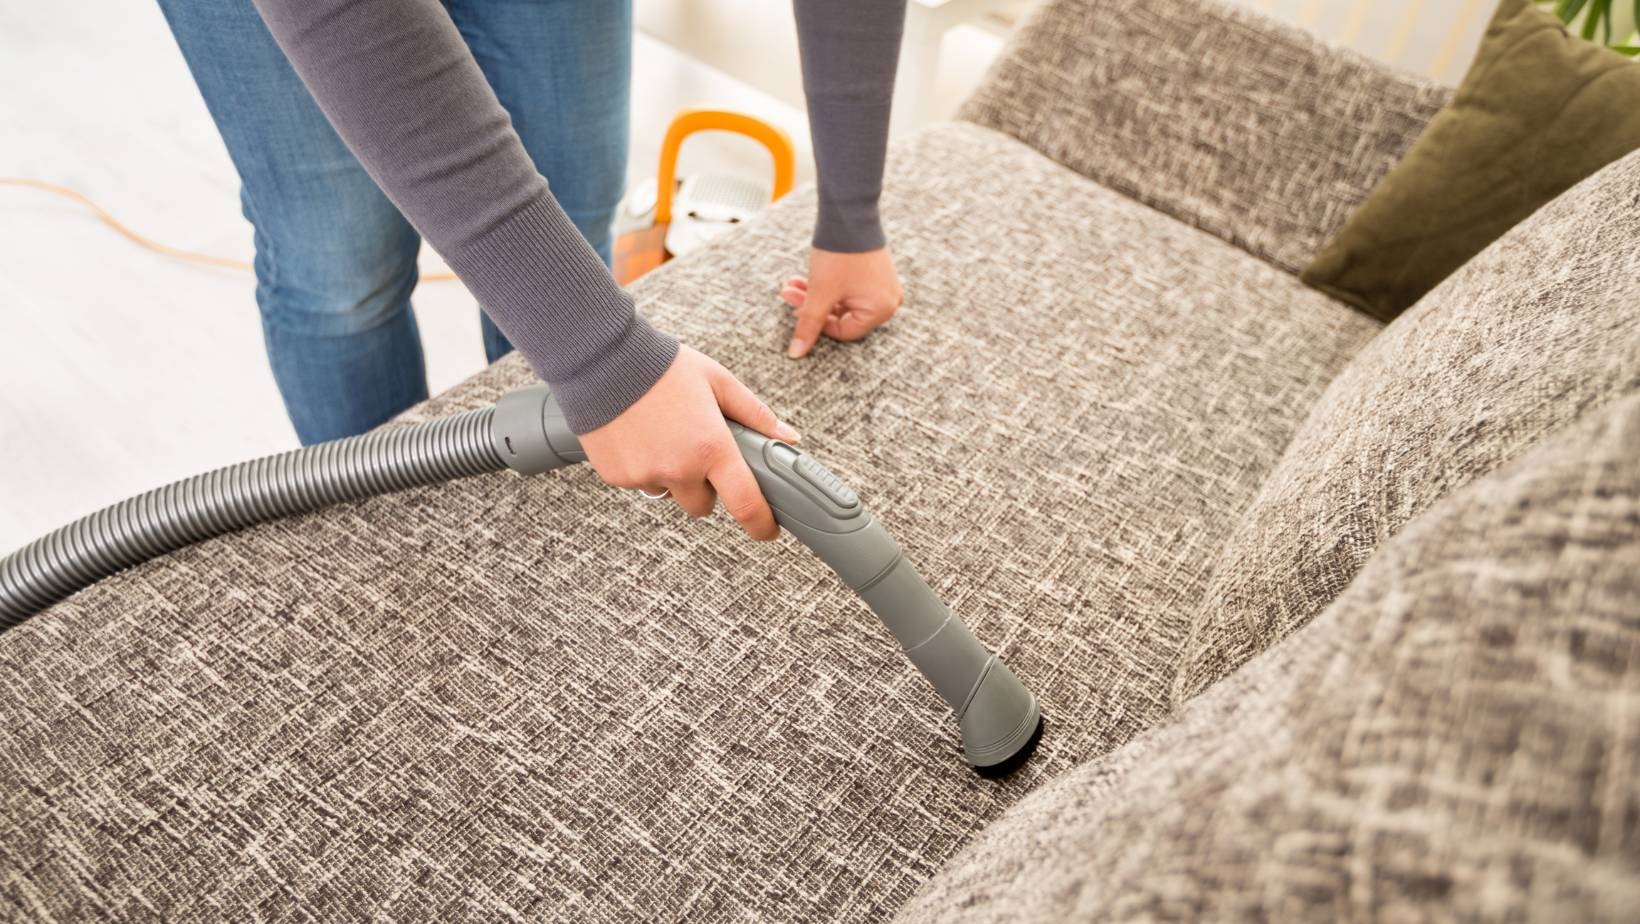 Aprende a limpiar tu sofá | Oportunissimo